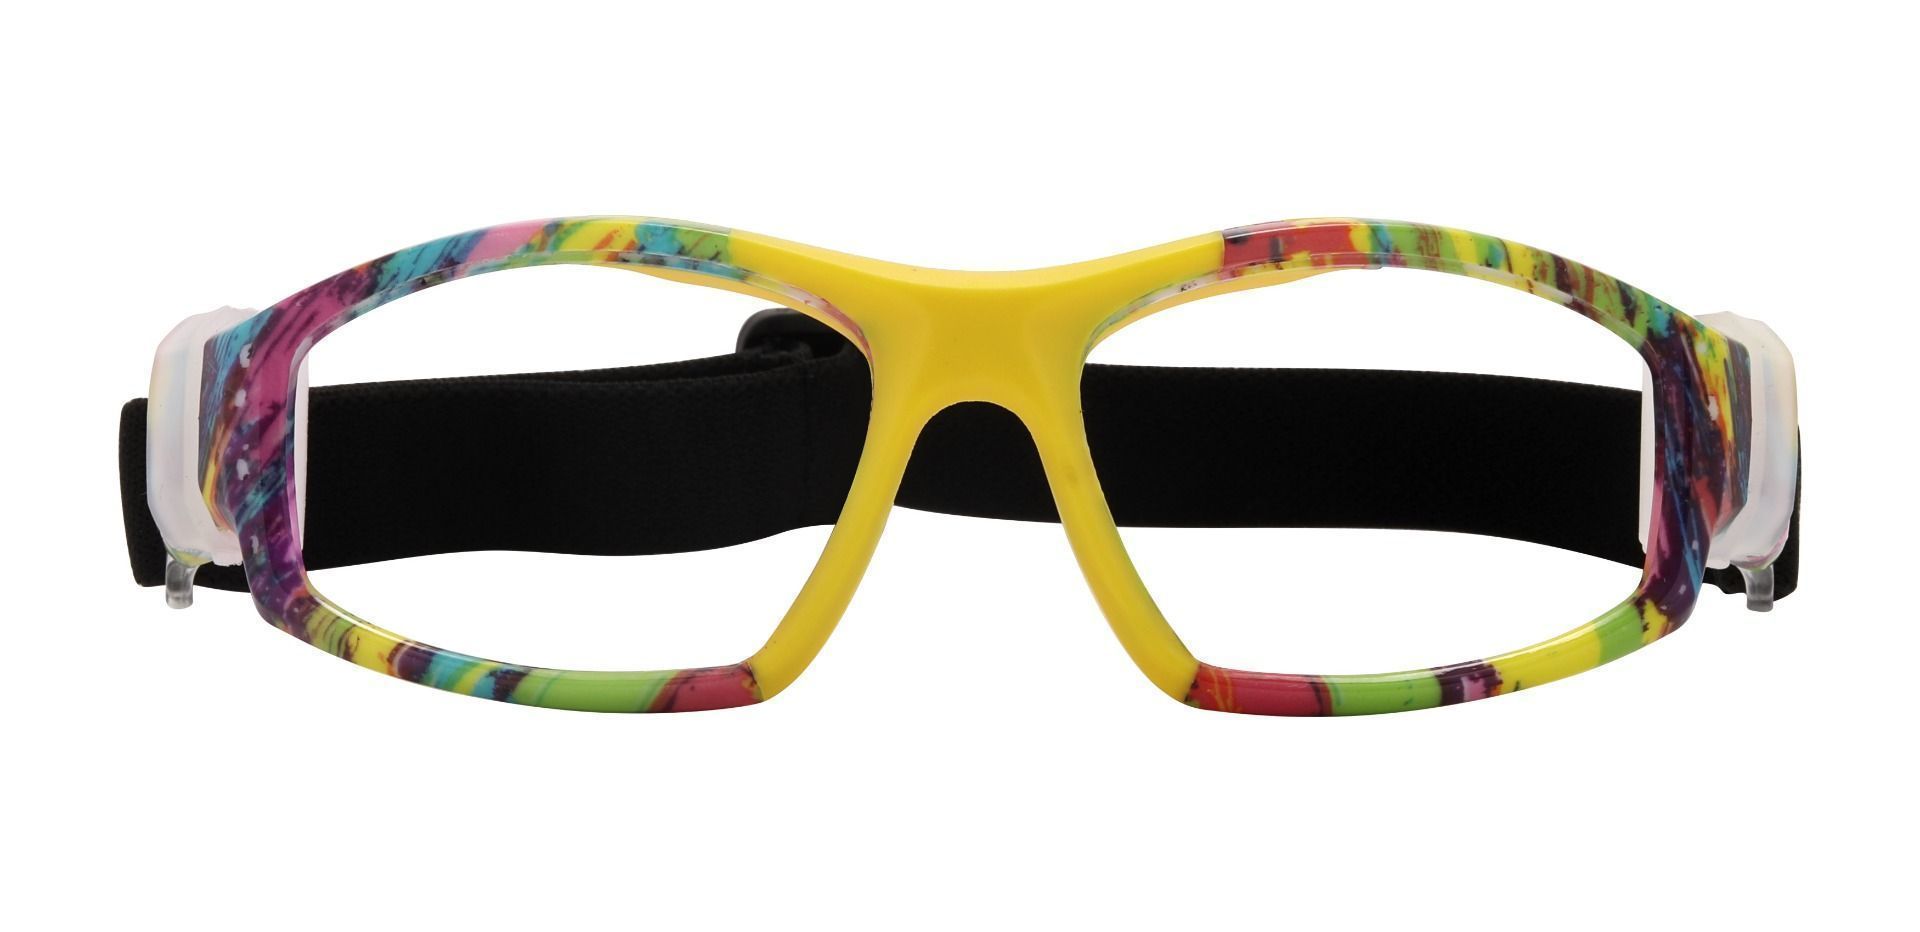 Warwick Sports Goggles Prescription Glasses - Yellow